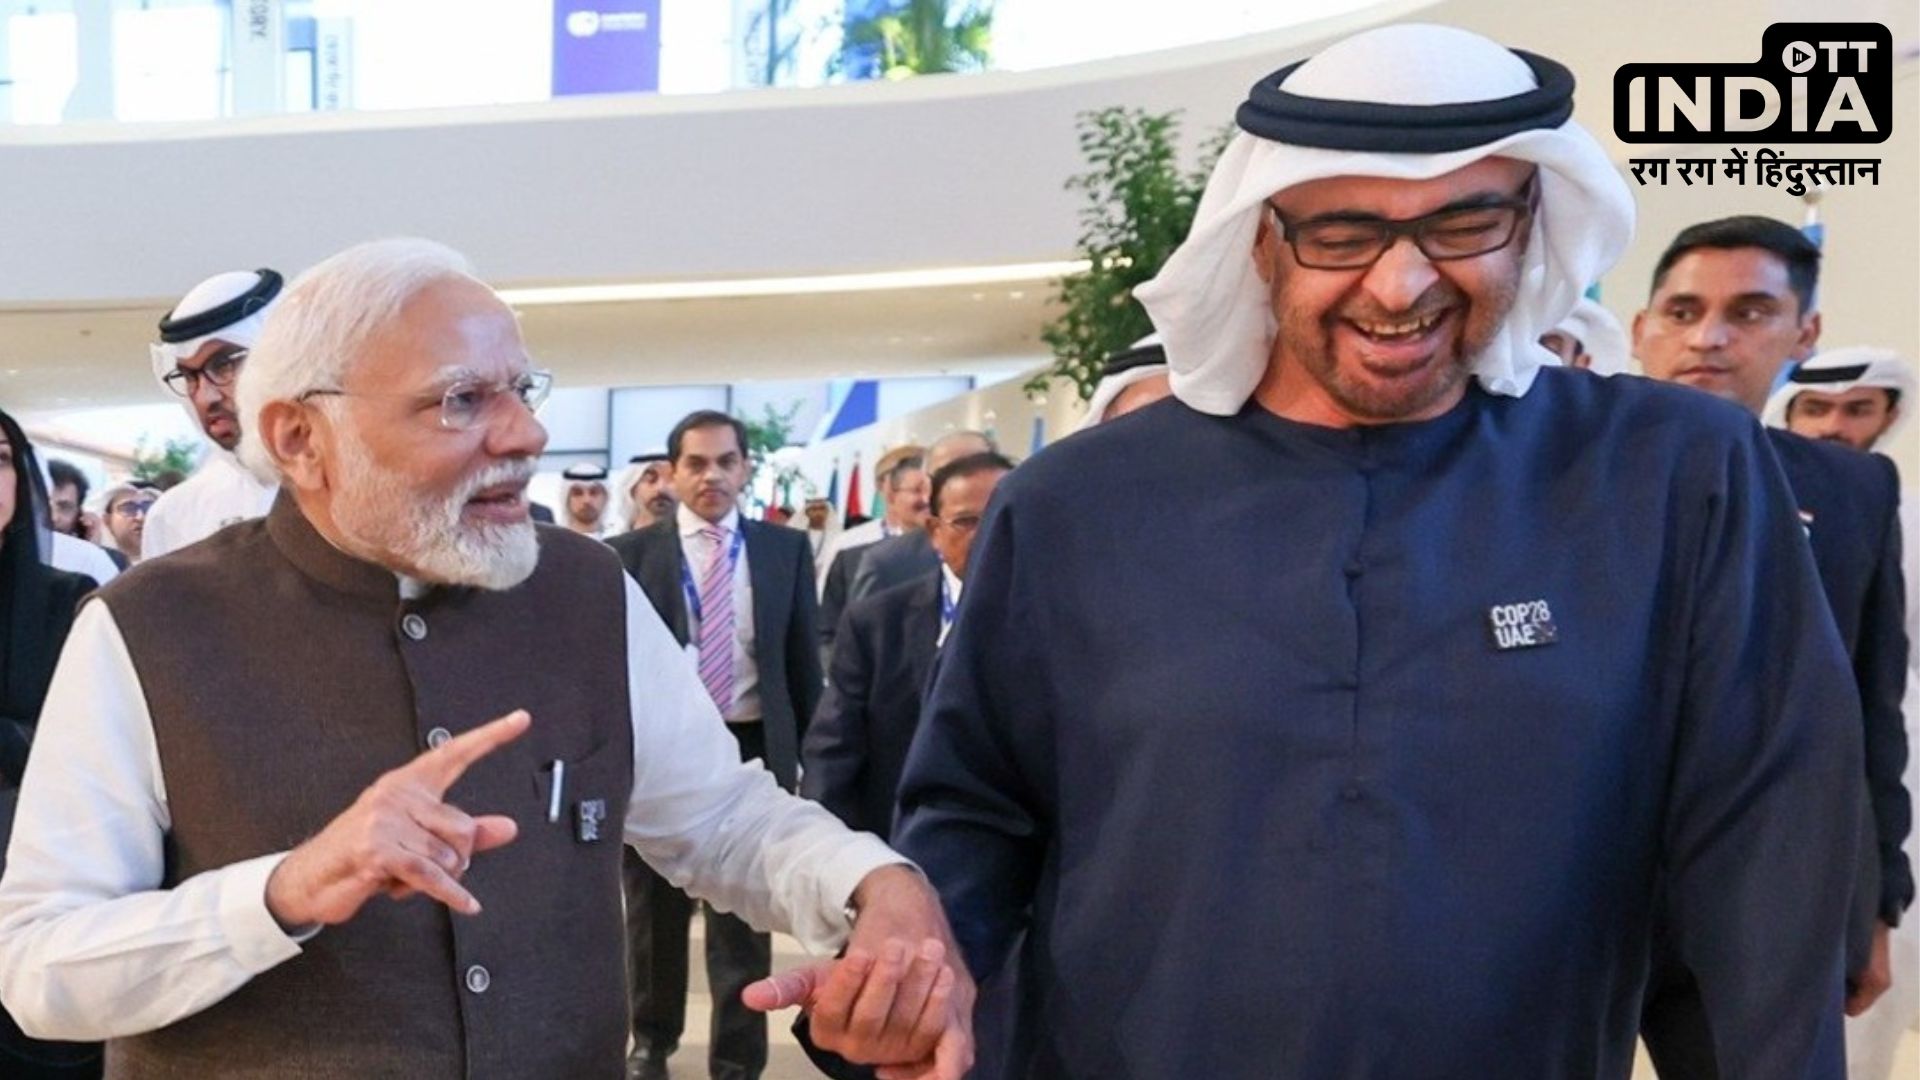 India UAE Relation: प्रधानमंत्री नरेन्द्र मोदी और यू ए ई राष्ट्रपति शेख मोहम्मद बिन जायद की बढ़ती दोस्ती के चर्चे